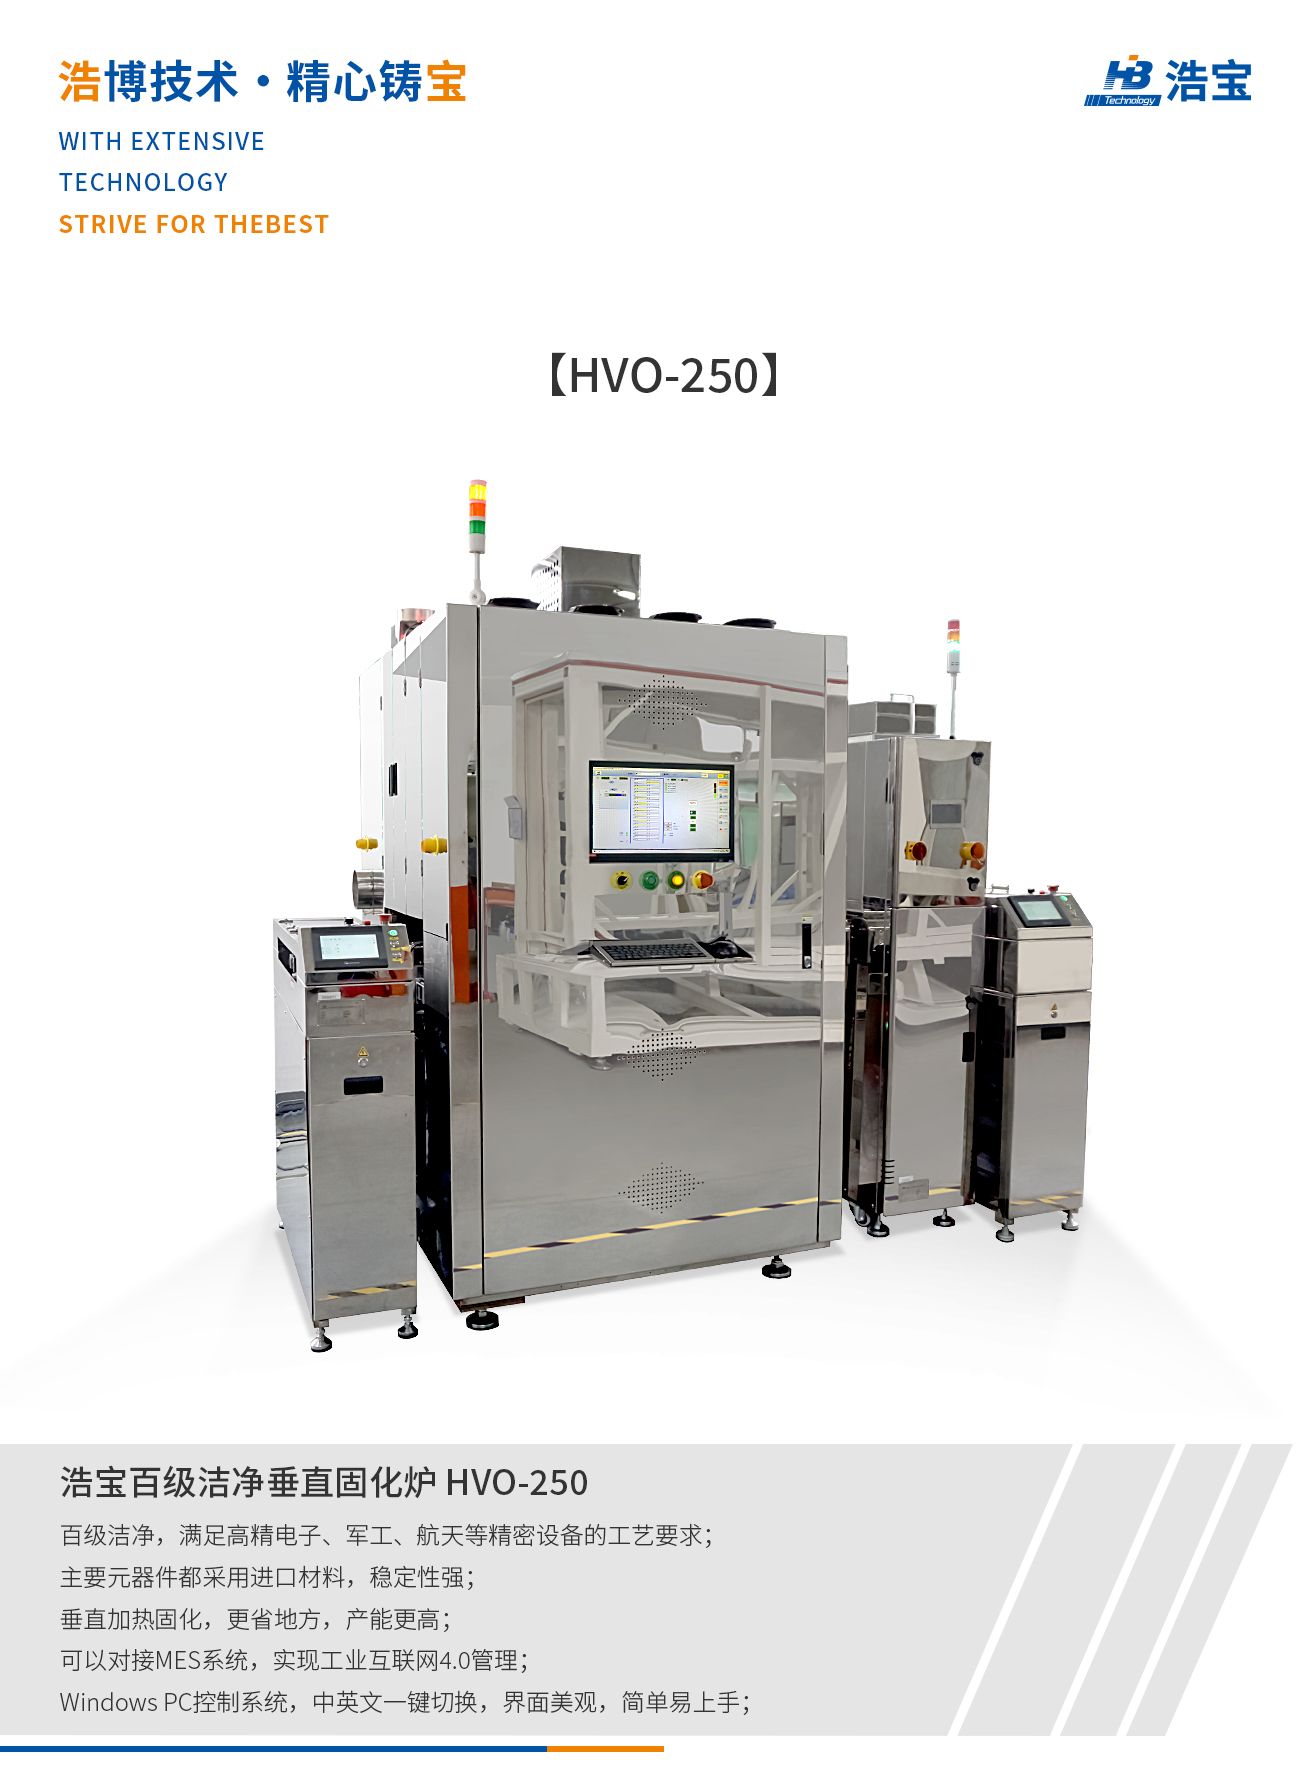 浩宝HVO-250百级洁净垂直固化炉